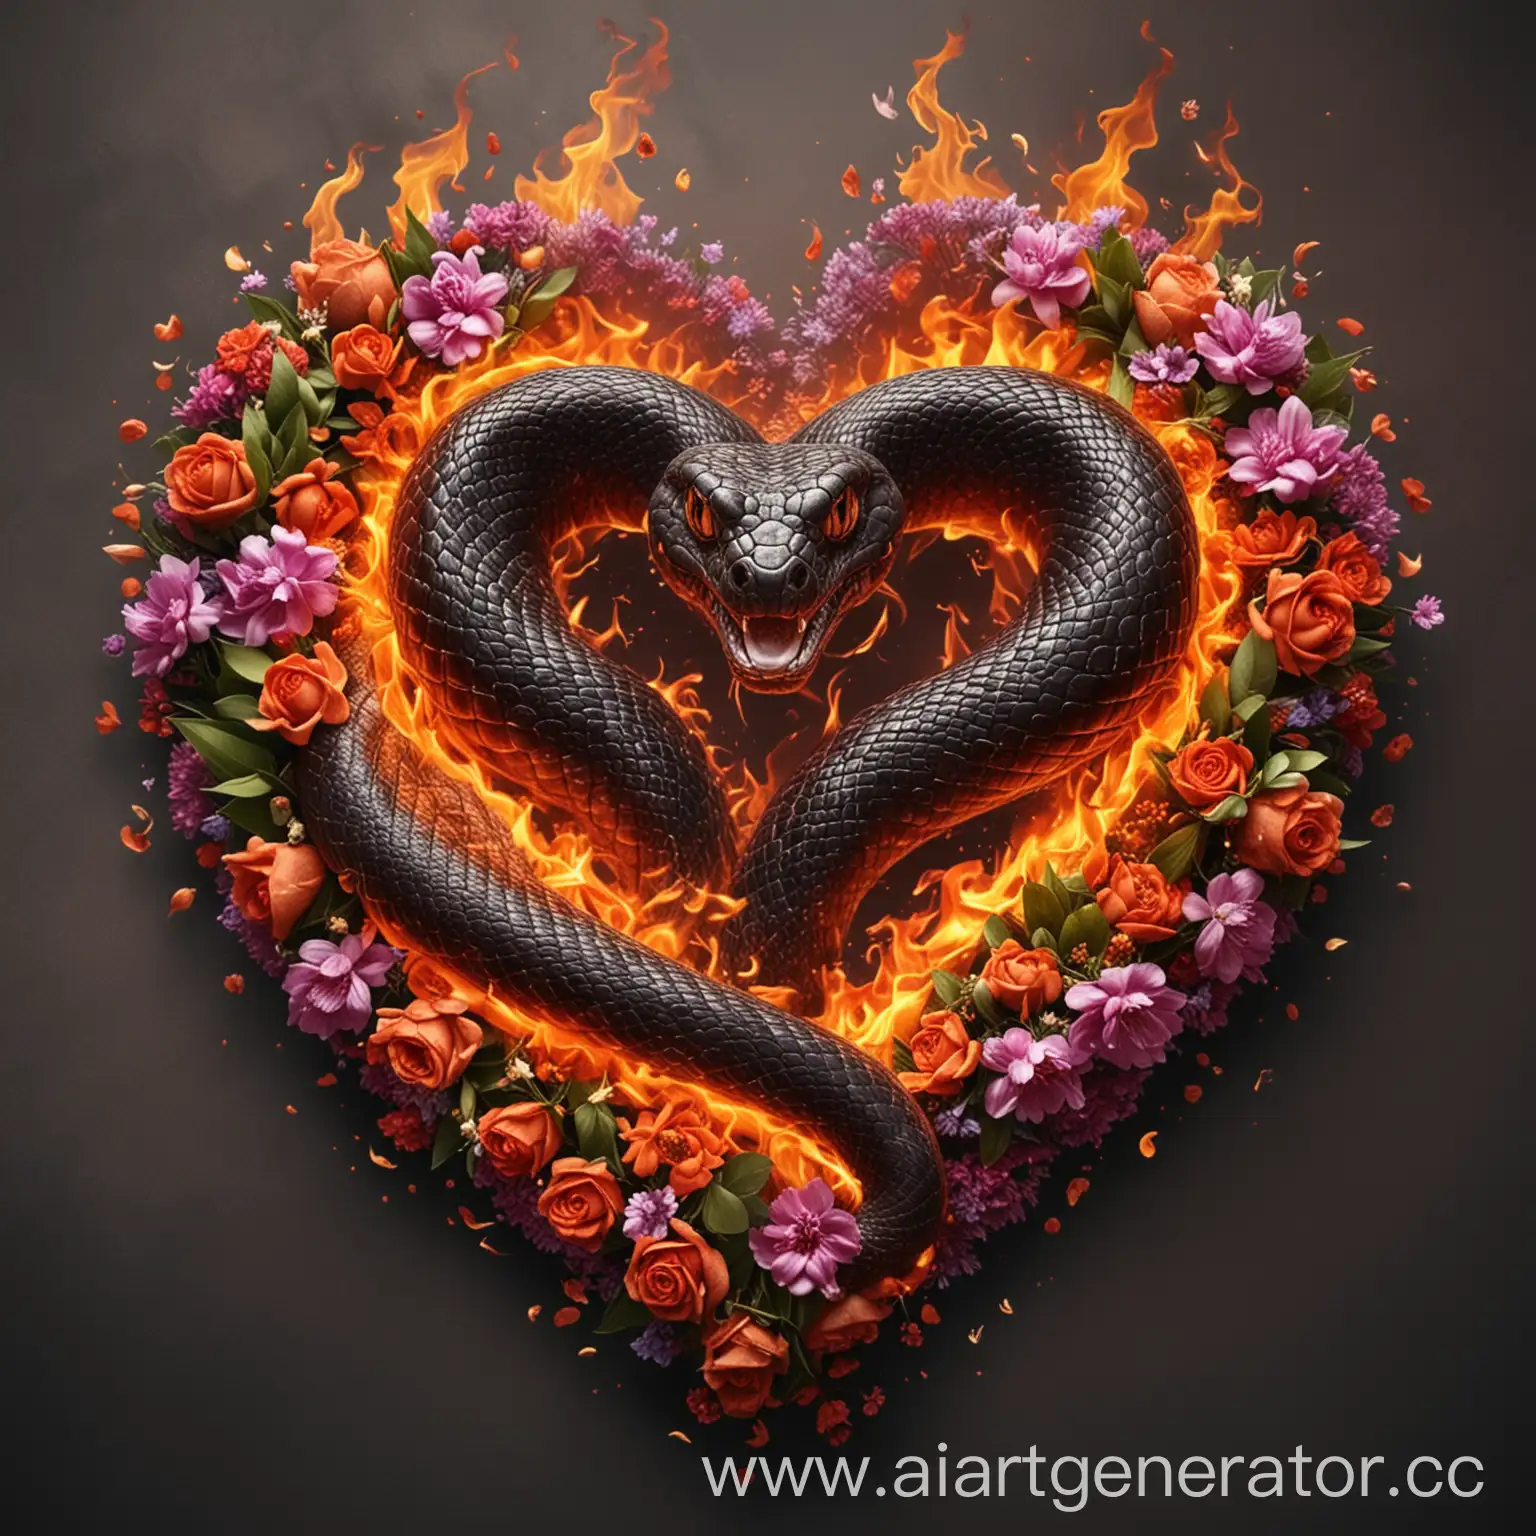 Змея в форме сердца.Горящая пламенем.На фоне  цветы